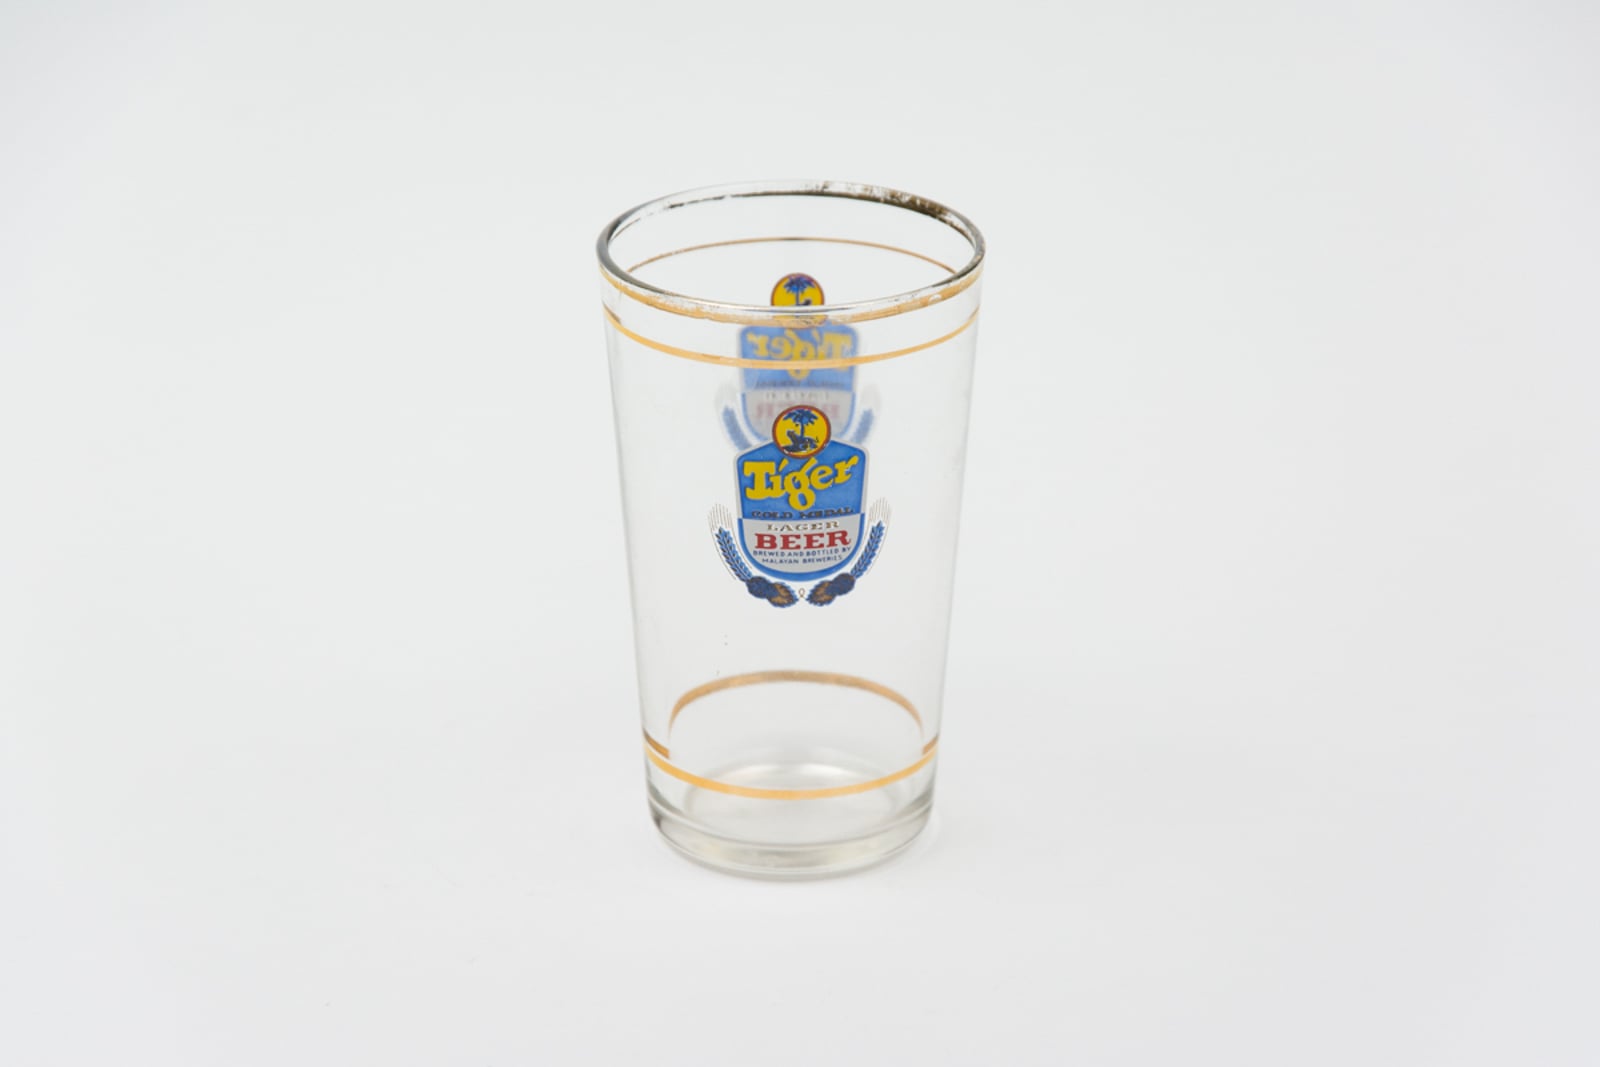 Tiger Lager Beer Small Sampler Glassware